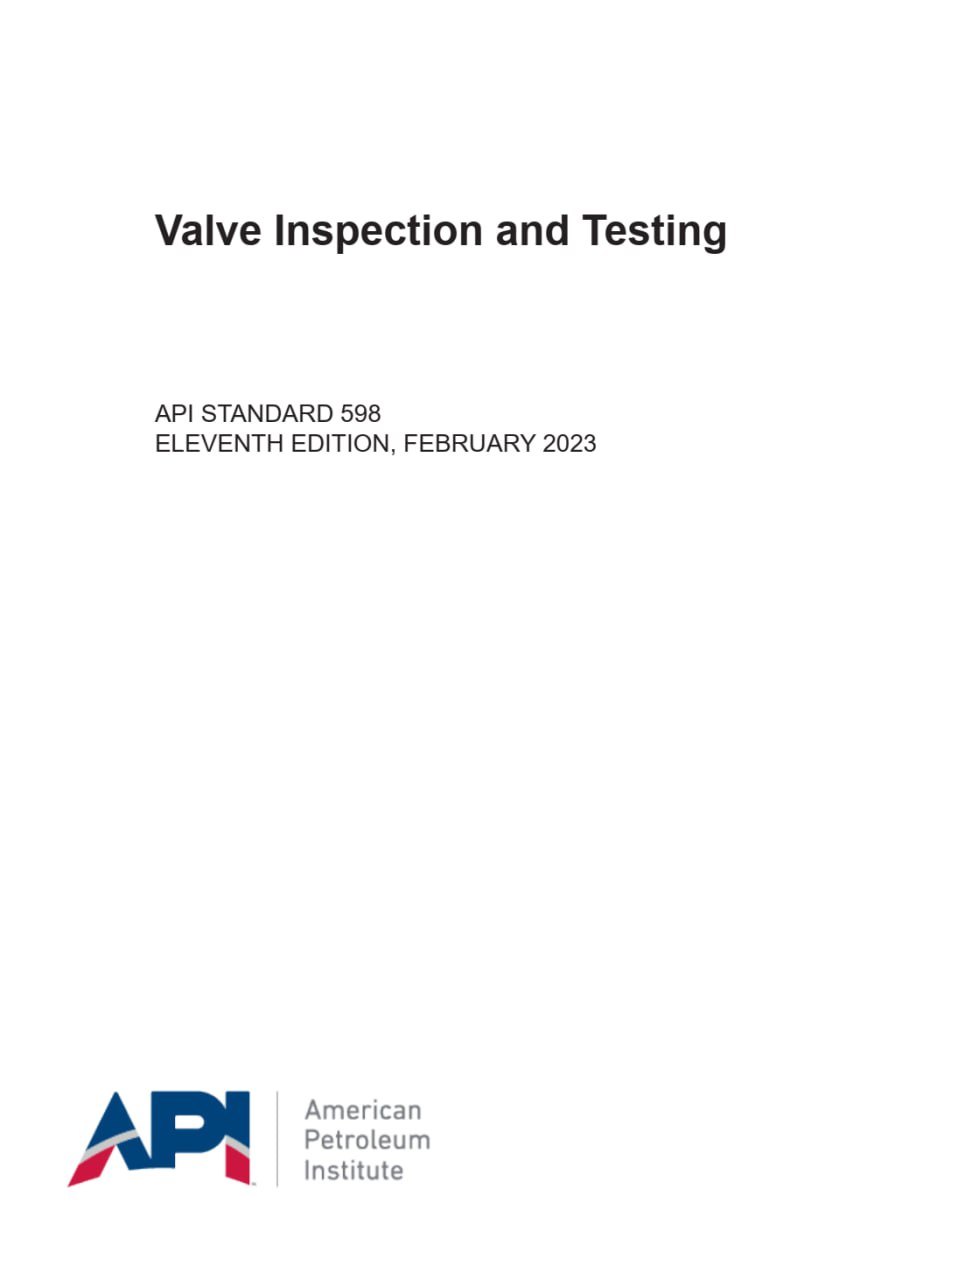 دانلود استاندارد داغ بازرسی و تست ولوها ویرایش فوریه 2023  ✅ API 598 2023  💥Valve Inspection and Testing